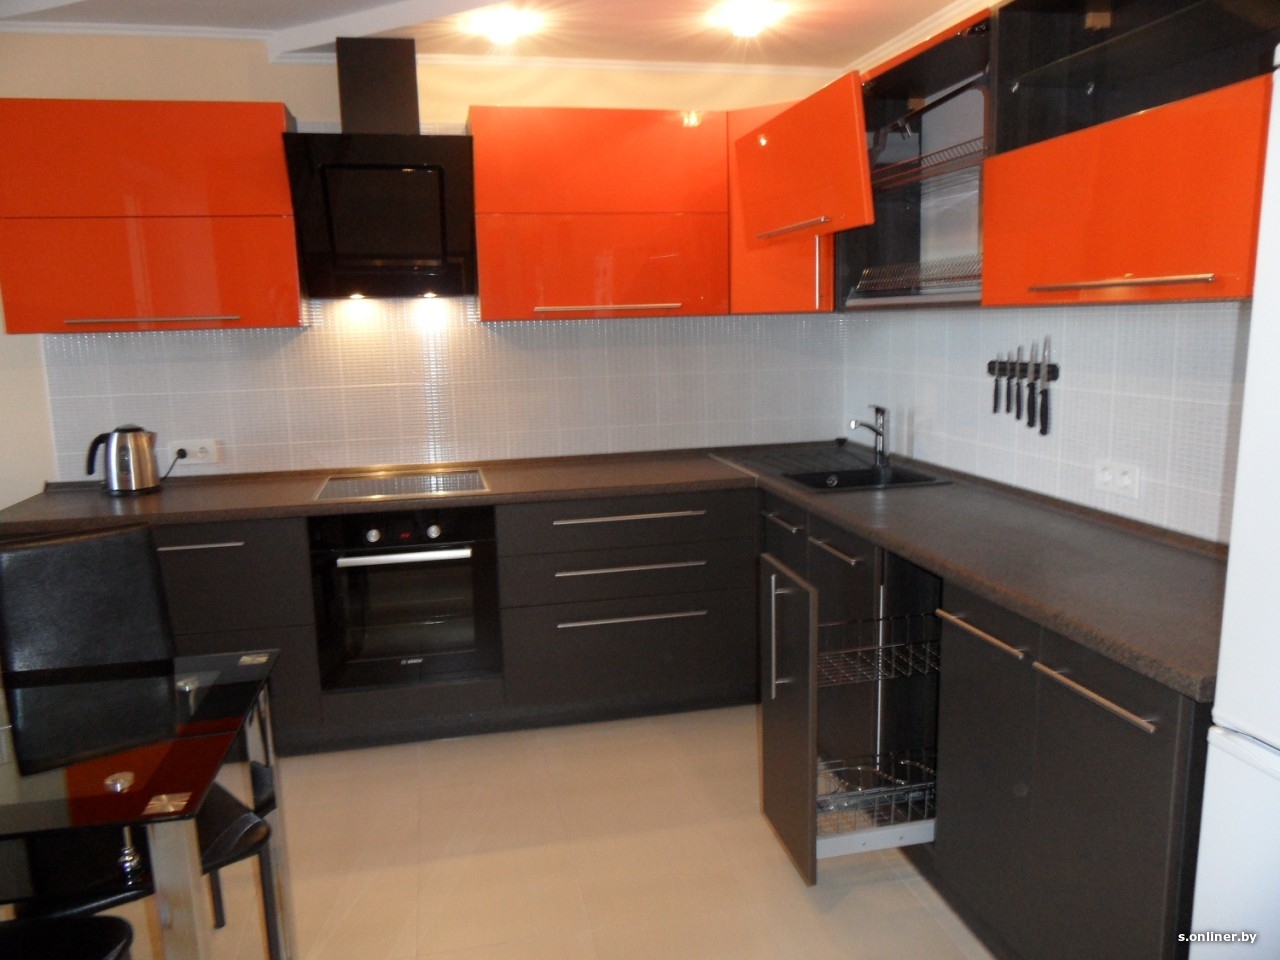 кухня оранжевая с черным фартуком